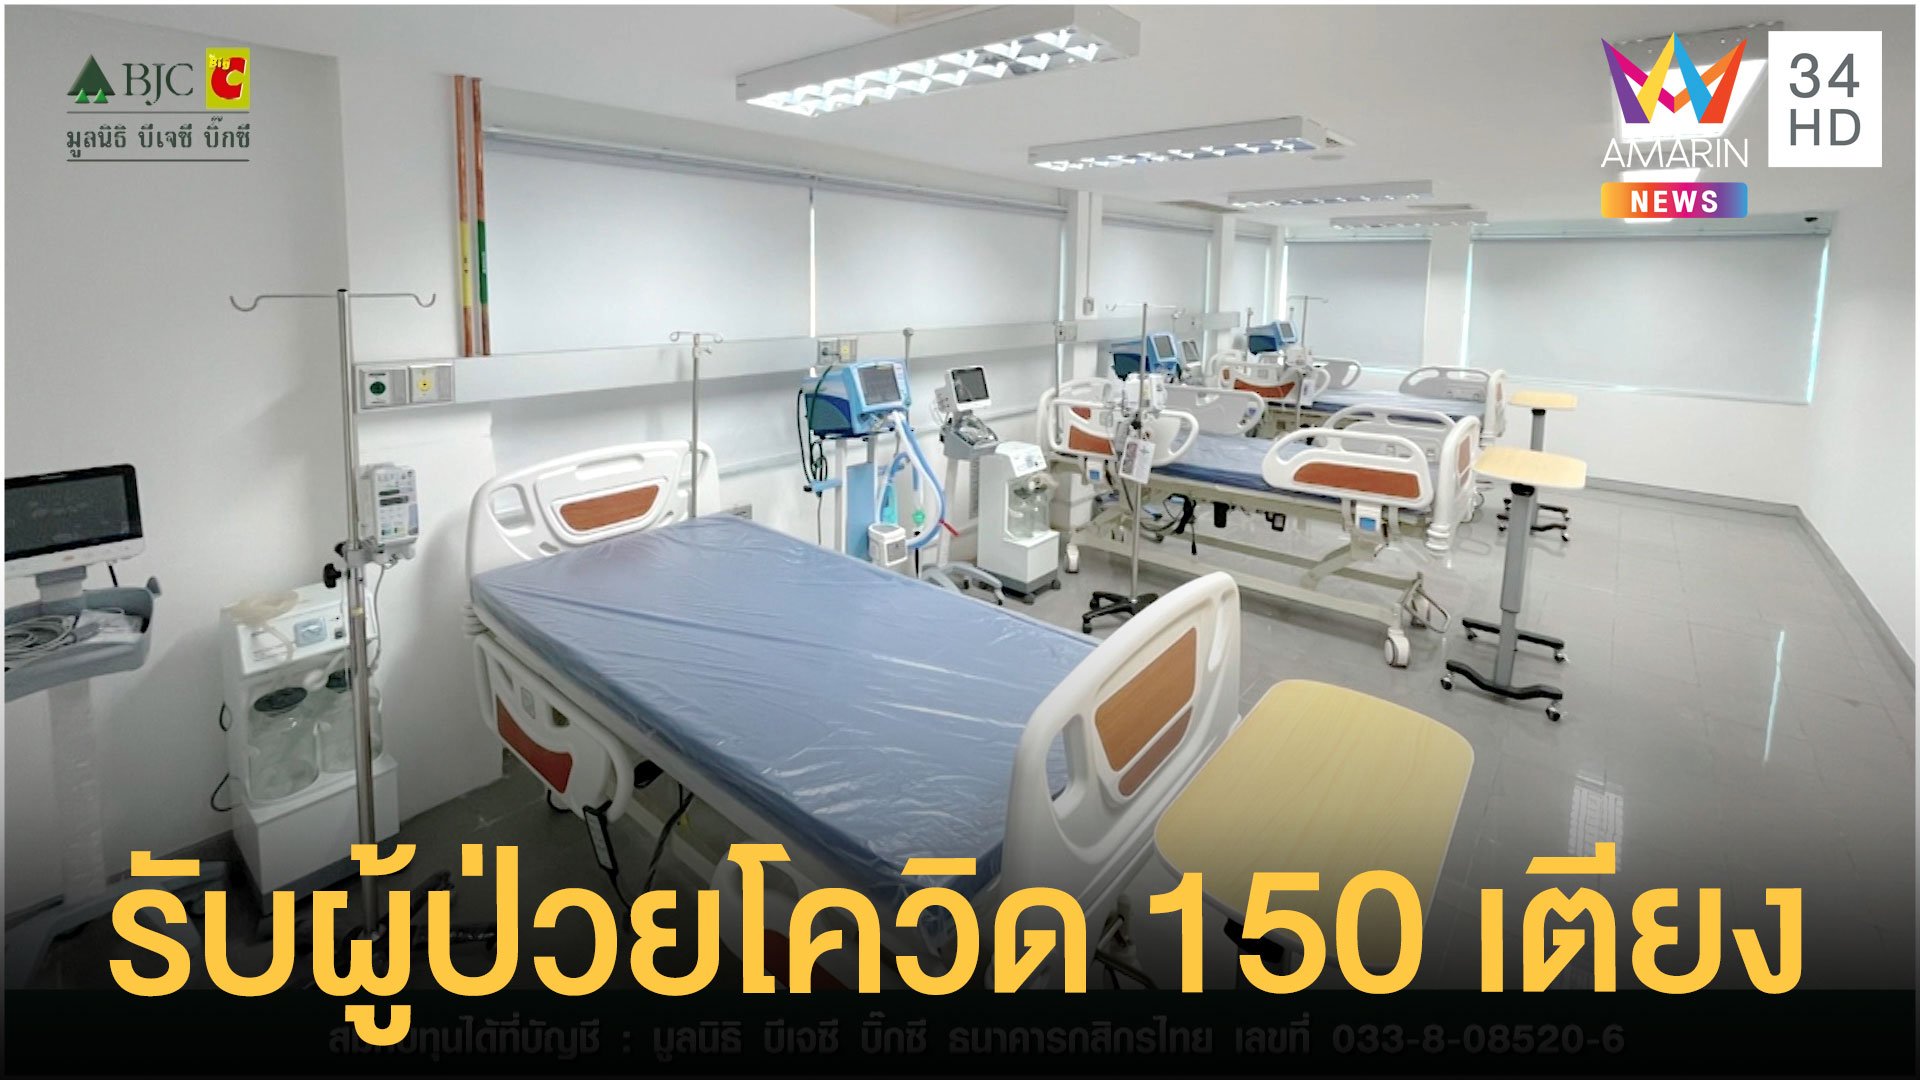 มูลนิธิ บีเจซี บิ๊กซี เปิดรับผู้ป่วยโควิด 150 เตียง | ข่าวเที่ยงอมรินทร์ | 7 ก.ย. 64 | AMARIN TVHD34